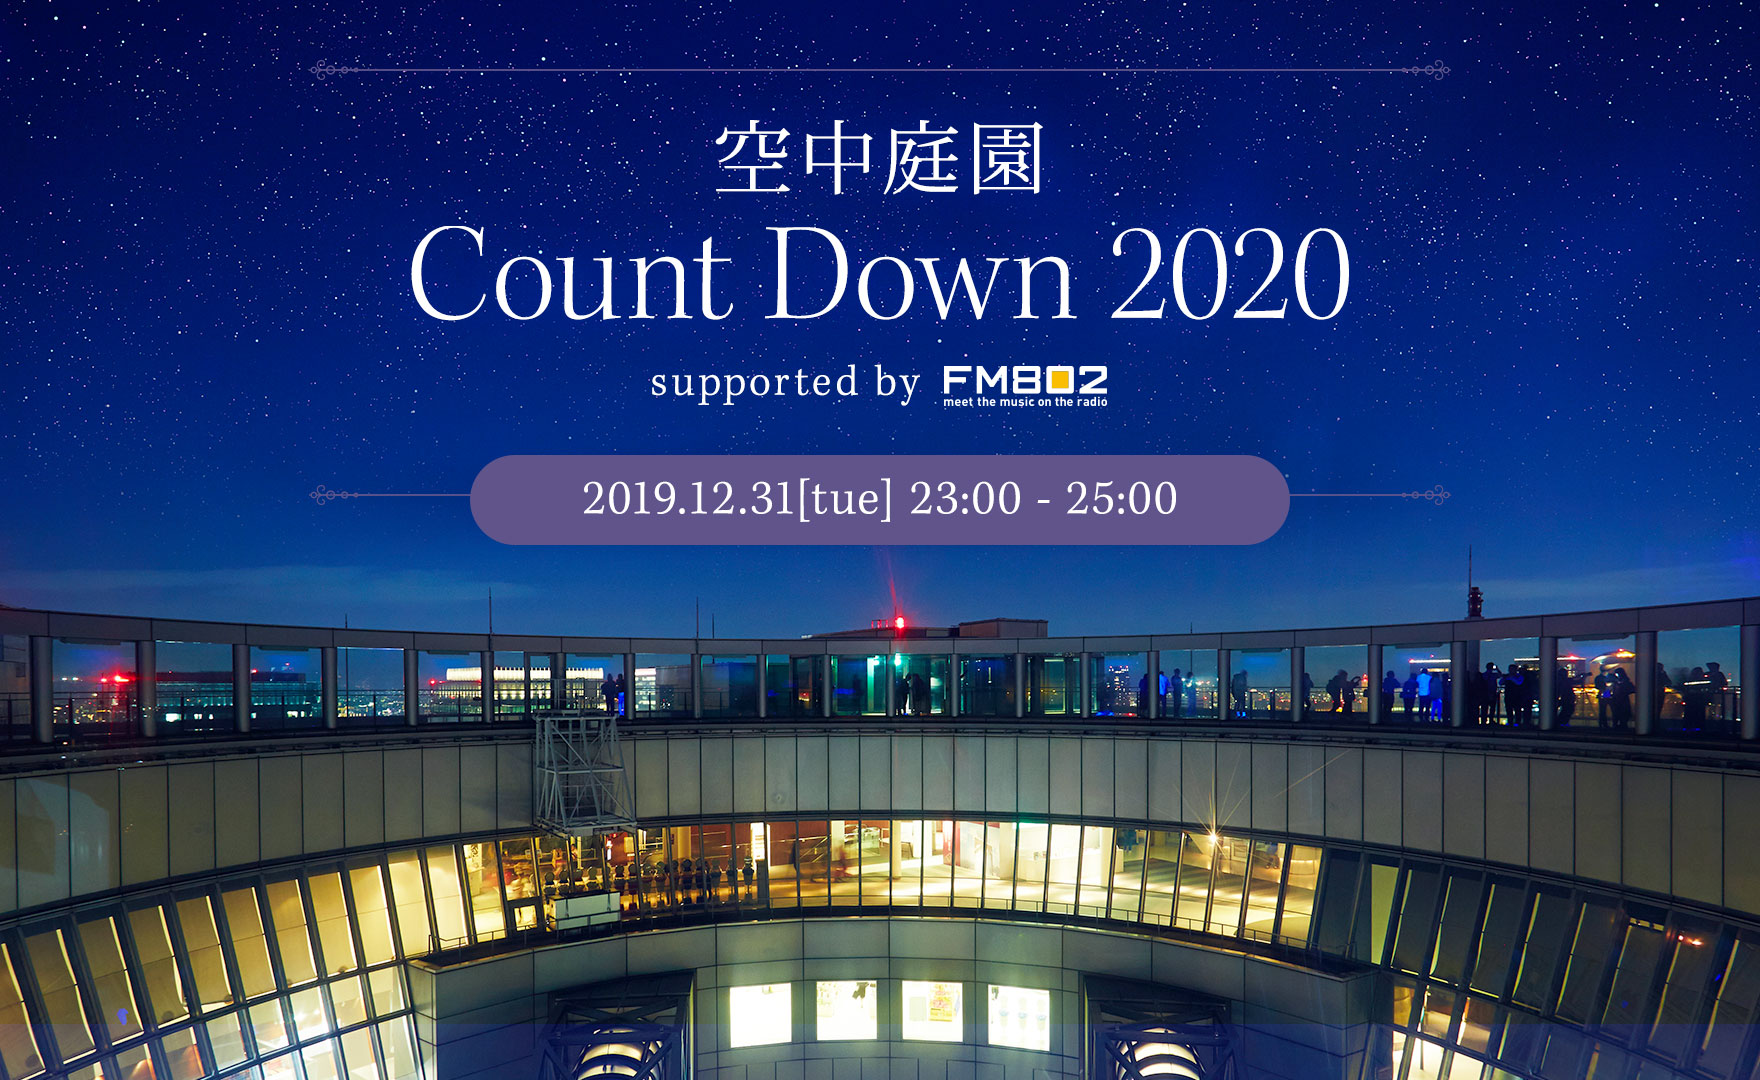 空中庭園 Count Down 2020 supported by FM802